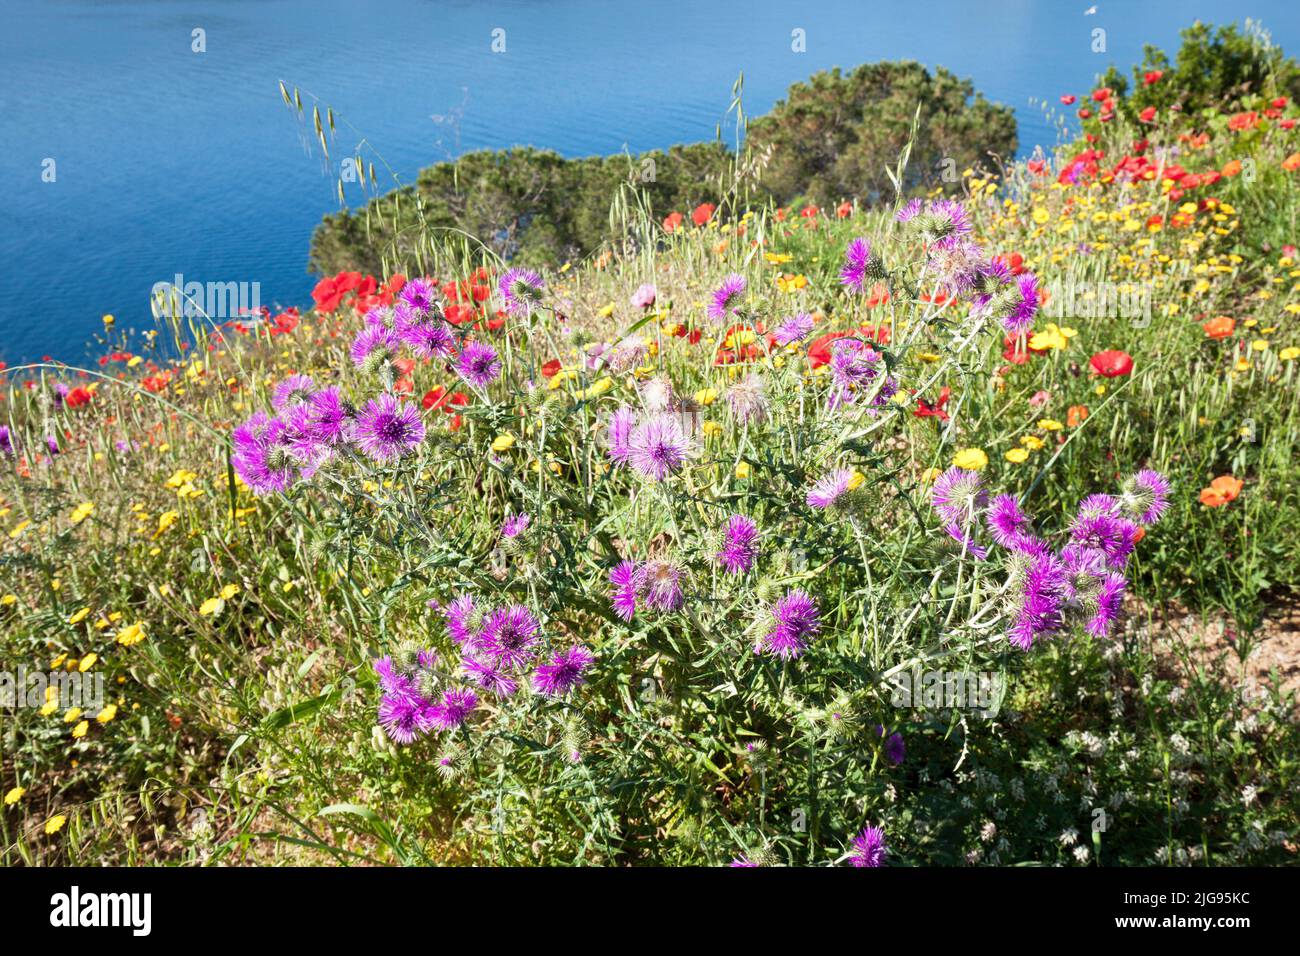 Elba island poppy fields Stock Photo